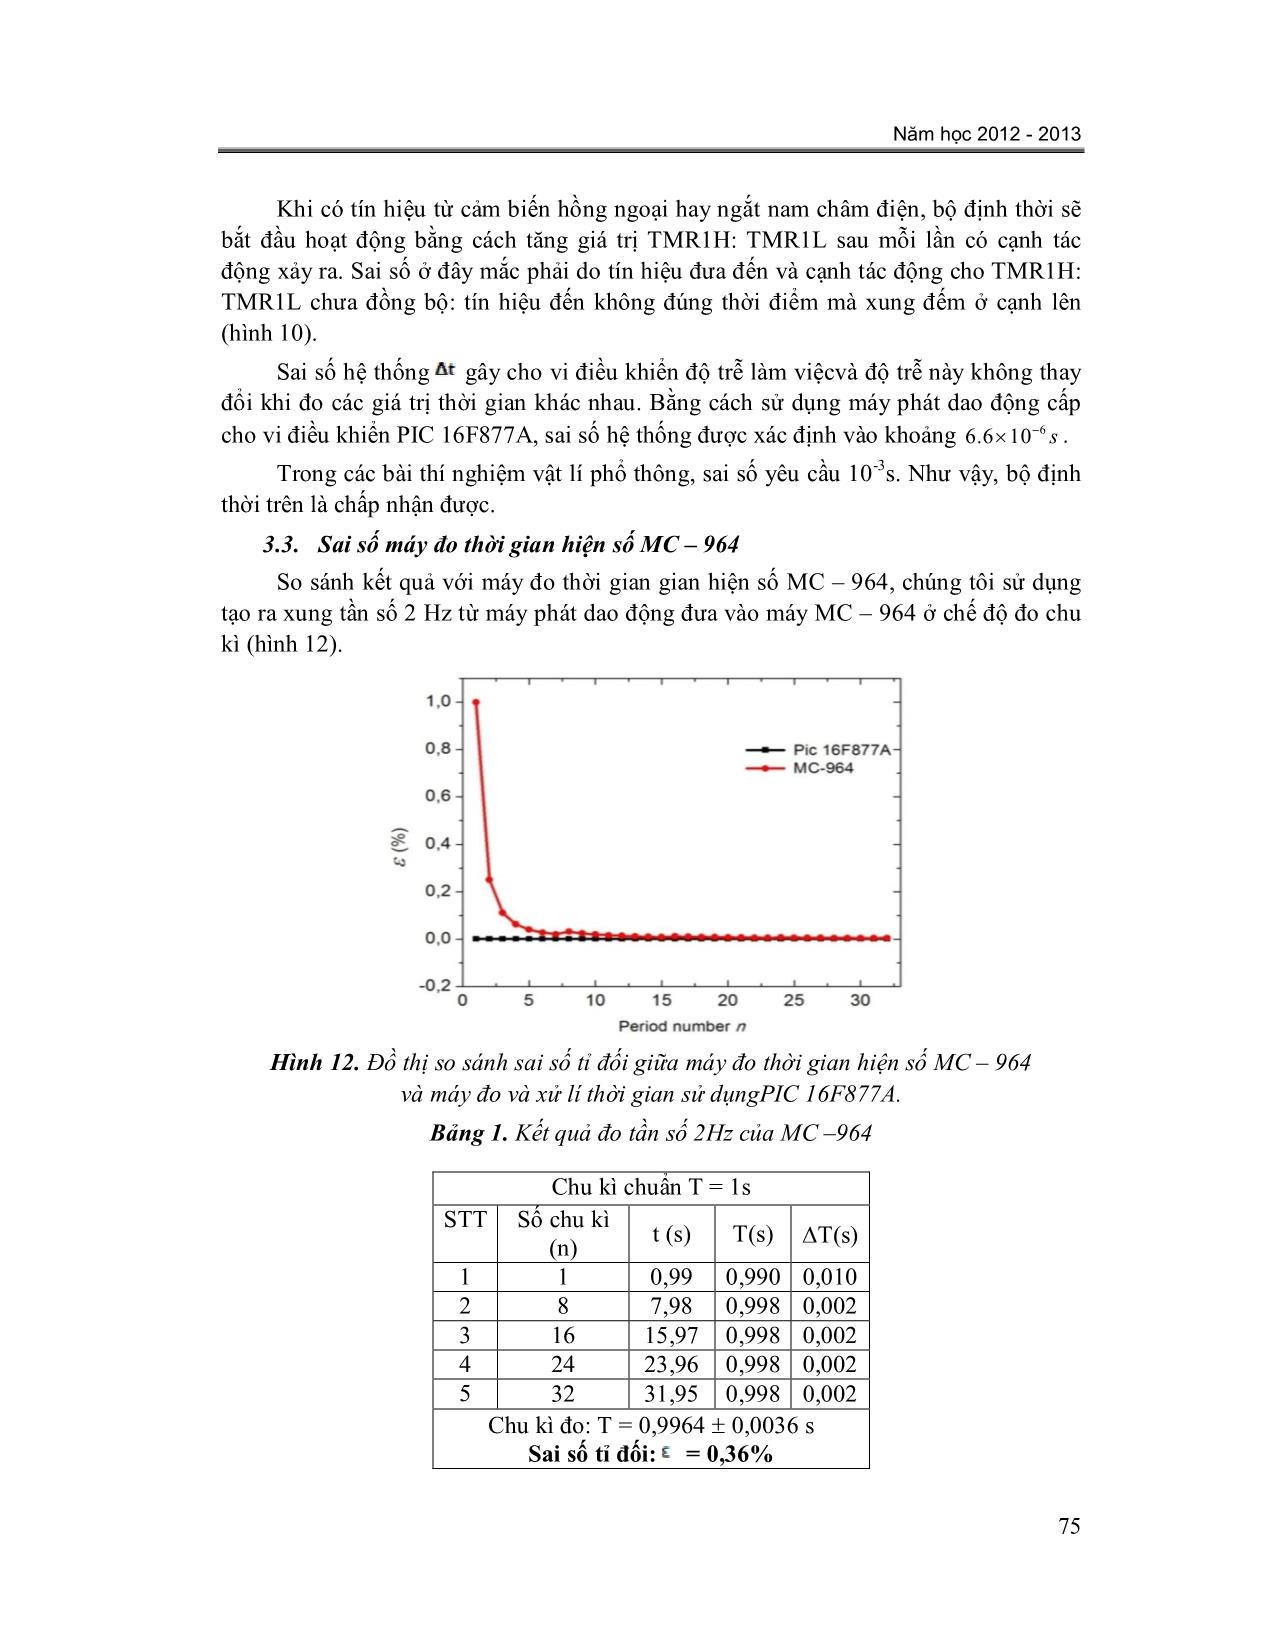 Ứng dụng vi điều khiển pic 16F877A trong thí nghiệm vật lí phổ thông trang 7